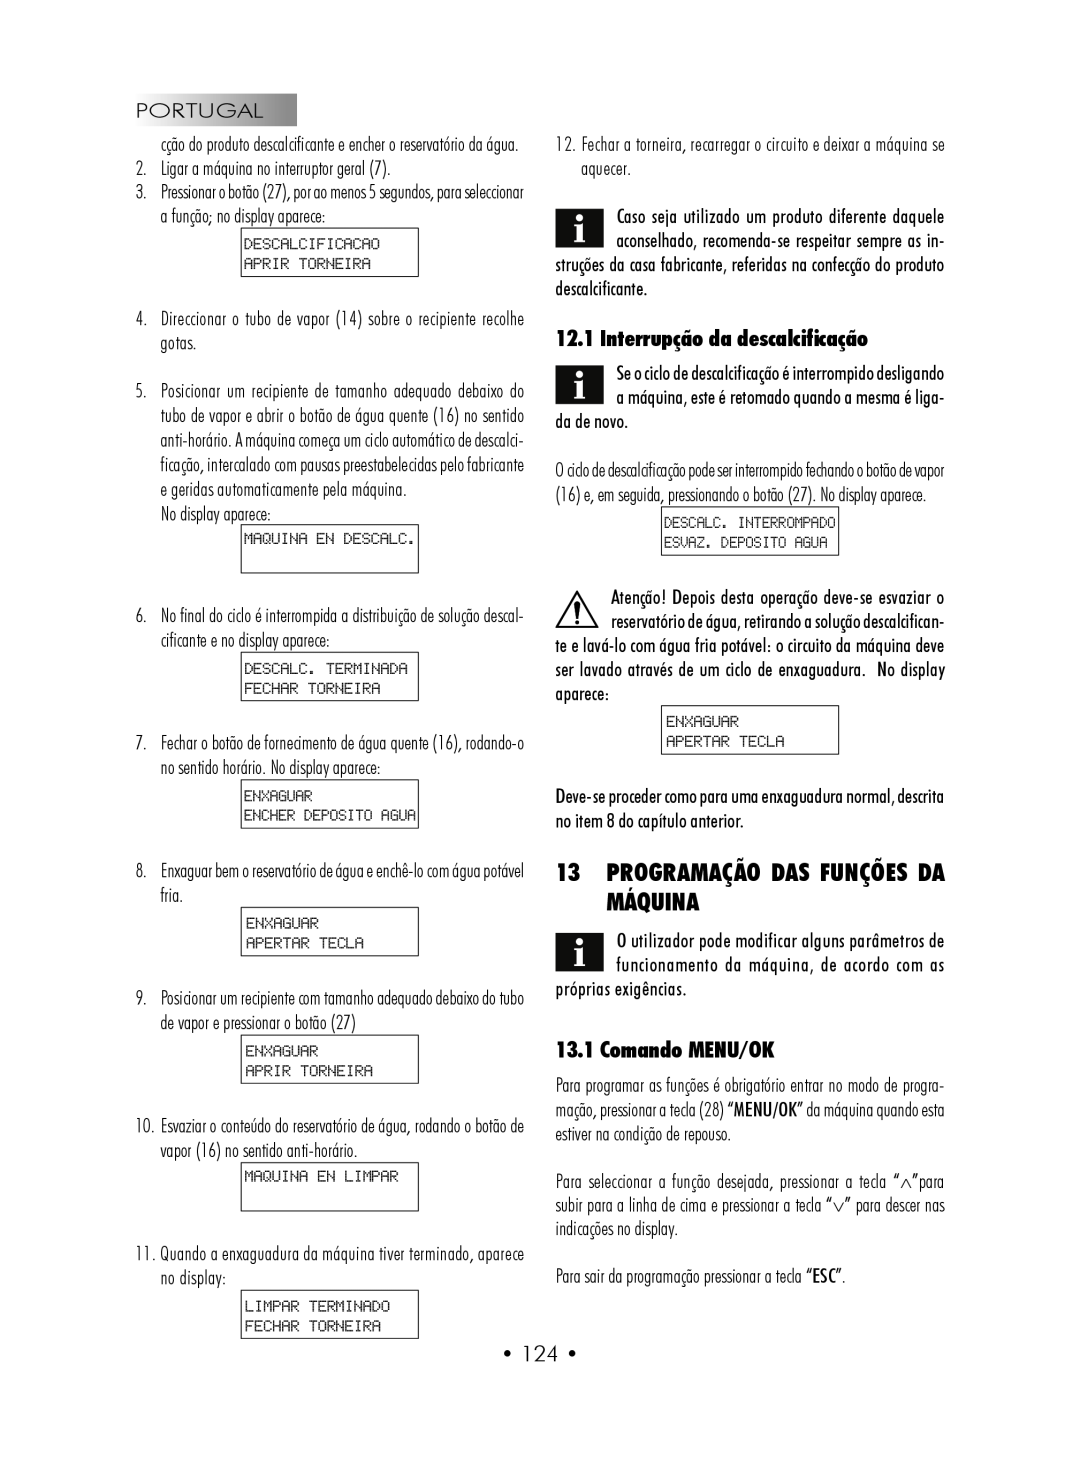 Gaggia SUP027YDR manual 13PROGRAMAÇÃO DAS FUNÇÕES DA MÁQUINA, Interrupção da descalcificação, Comando MENU/OK 